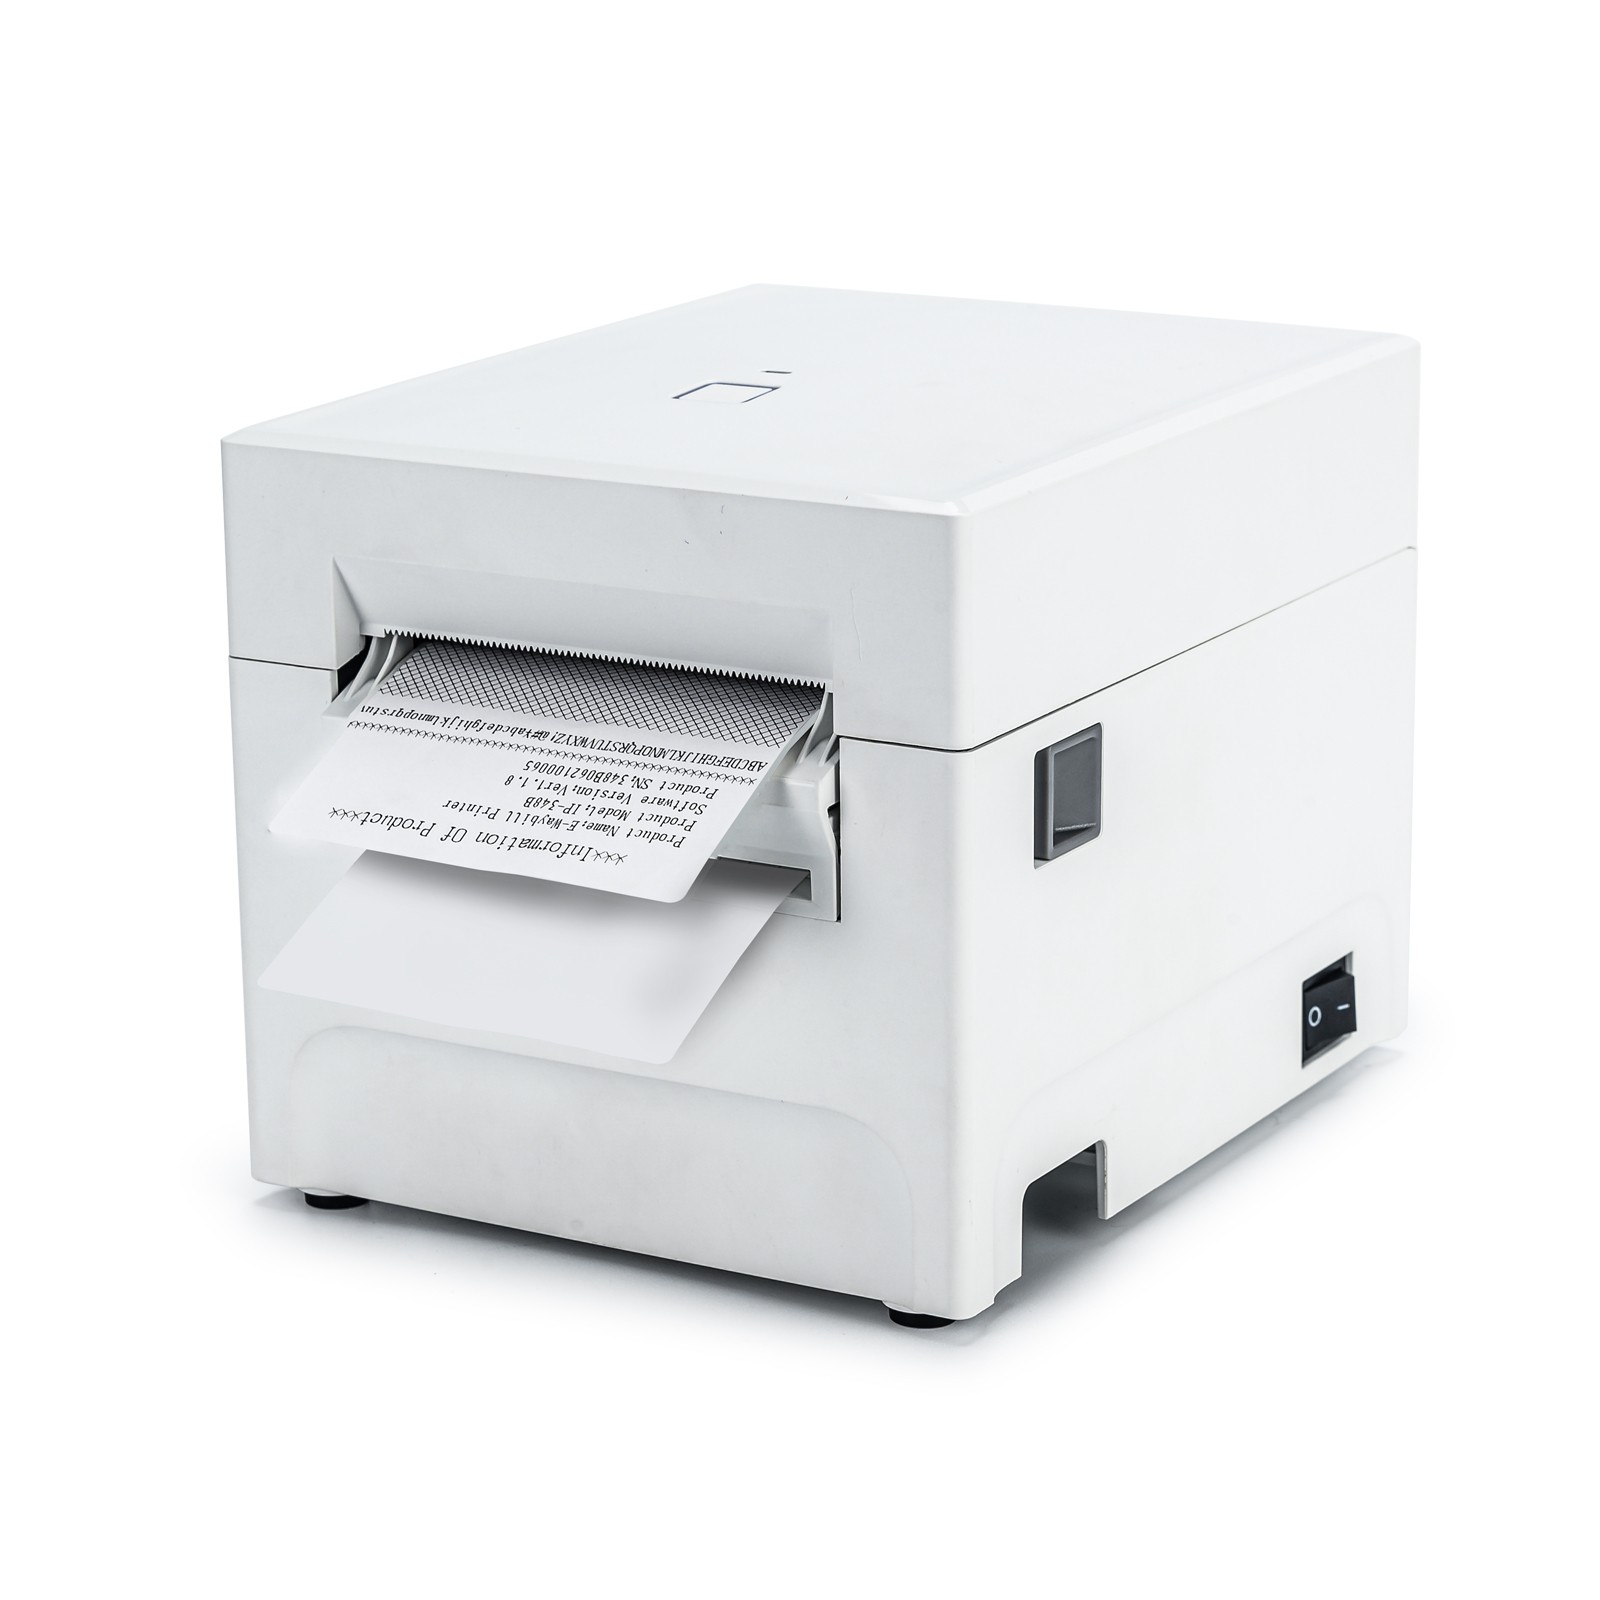 3-calowa termiczna drukarka kodów kreskowych do etykiet z funkcją odklejania etykiet
